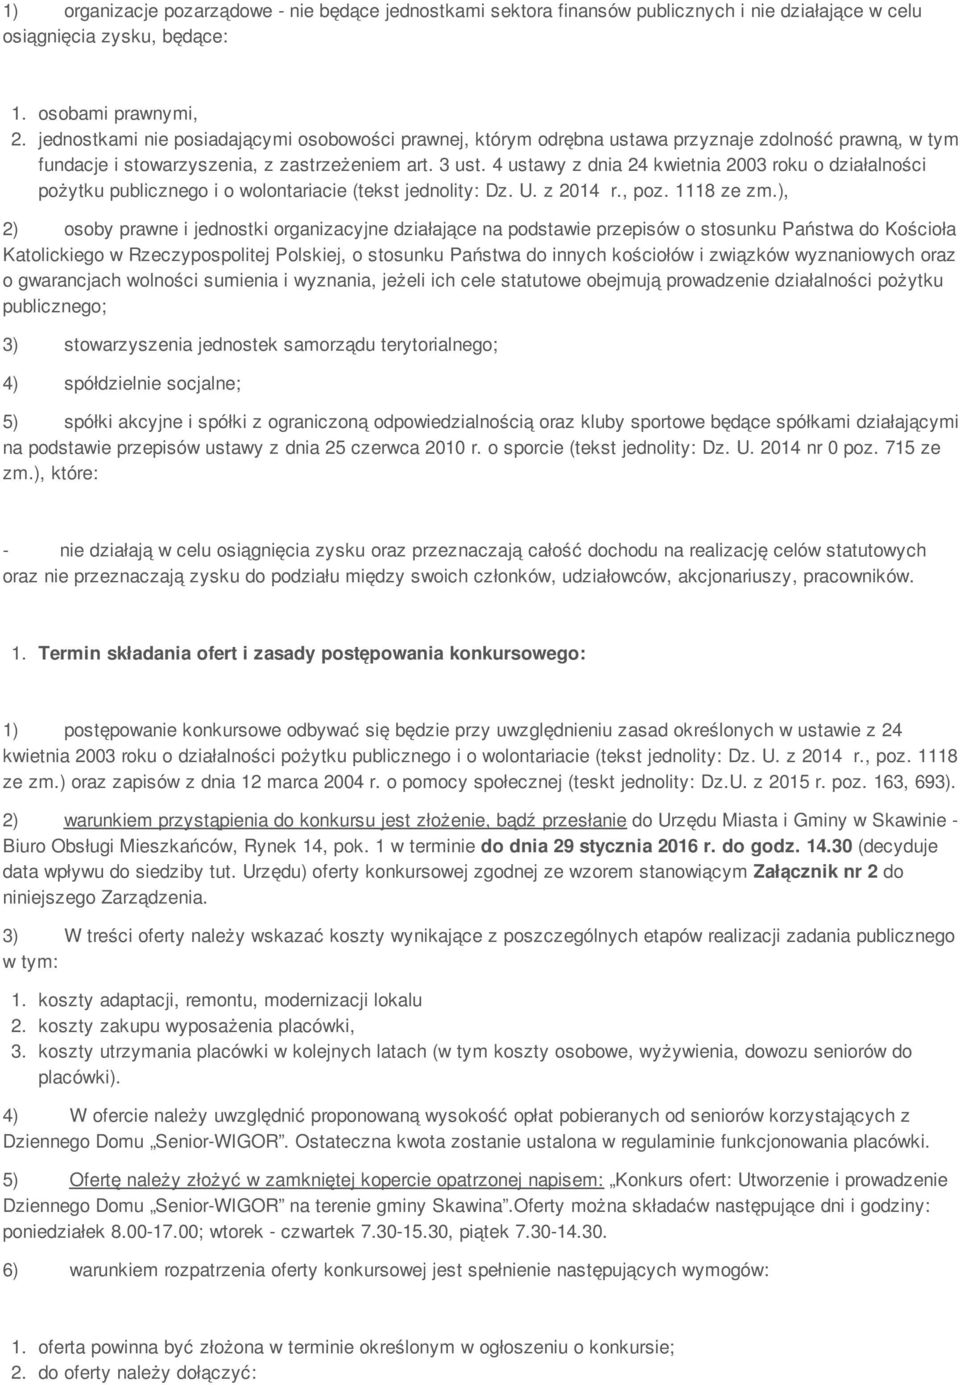 4 ustawy z dnia 24 kwietnia 2003 roku o działalności pożytku publicznego i o wolontariacie (tekst jednolity: Dz. U. z 2014 r., poz. 1118 ze zm.